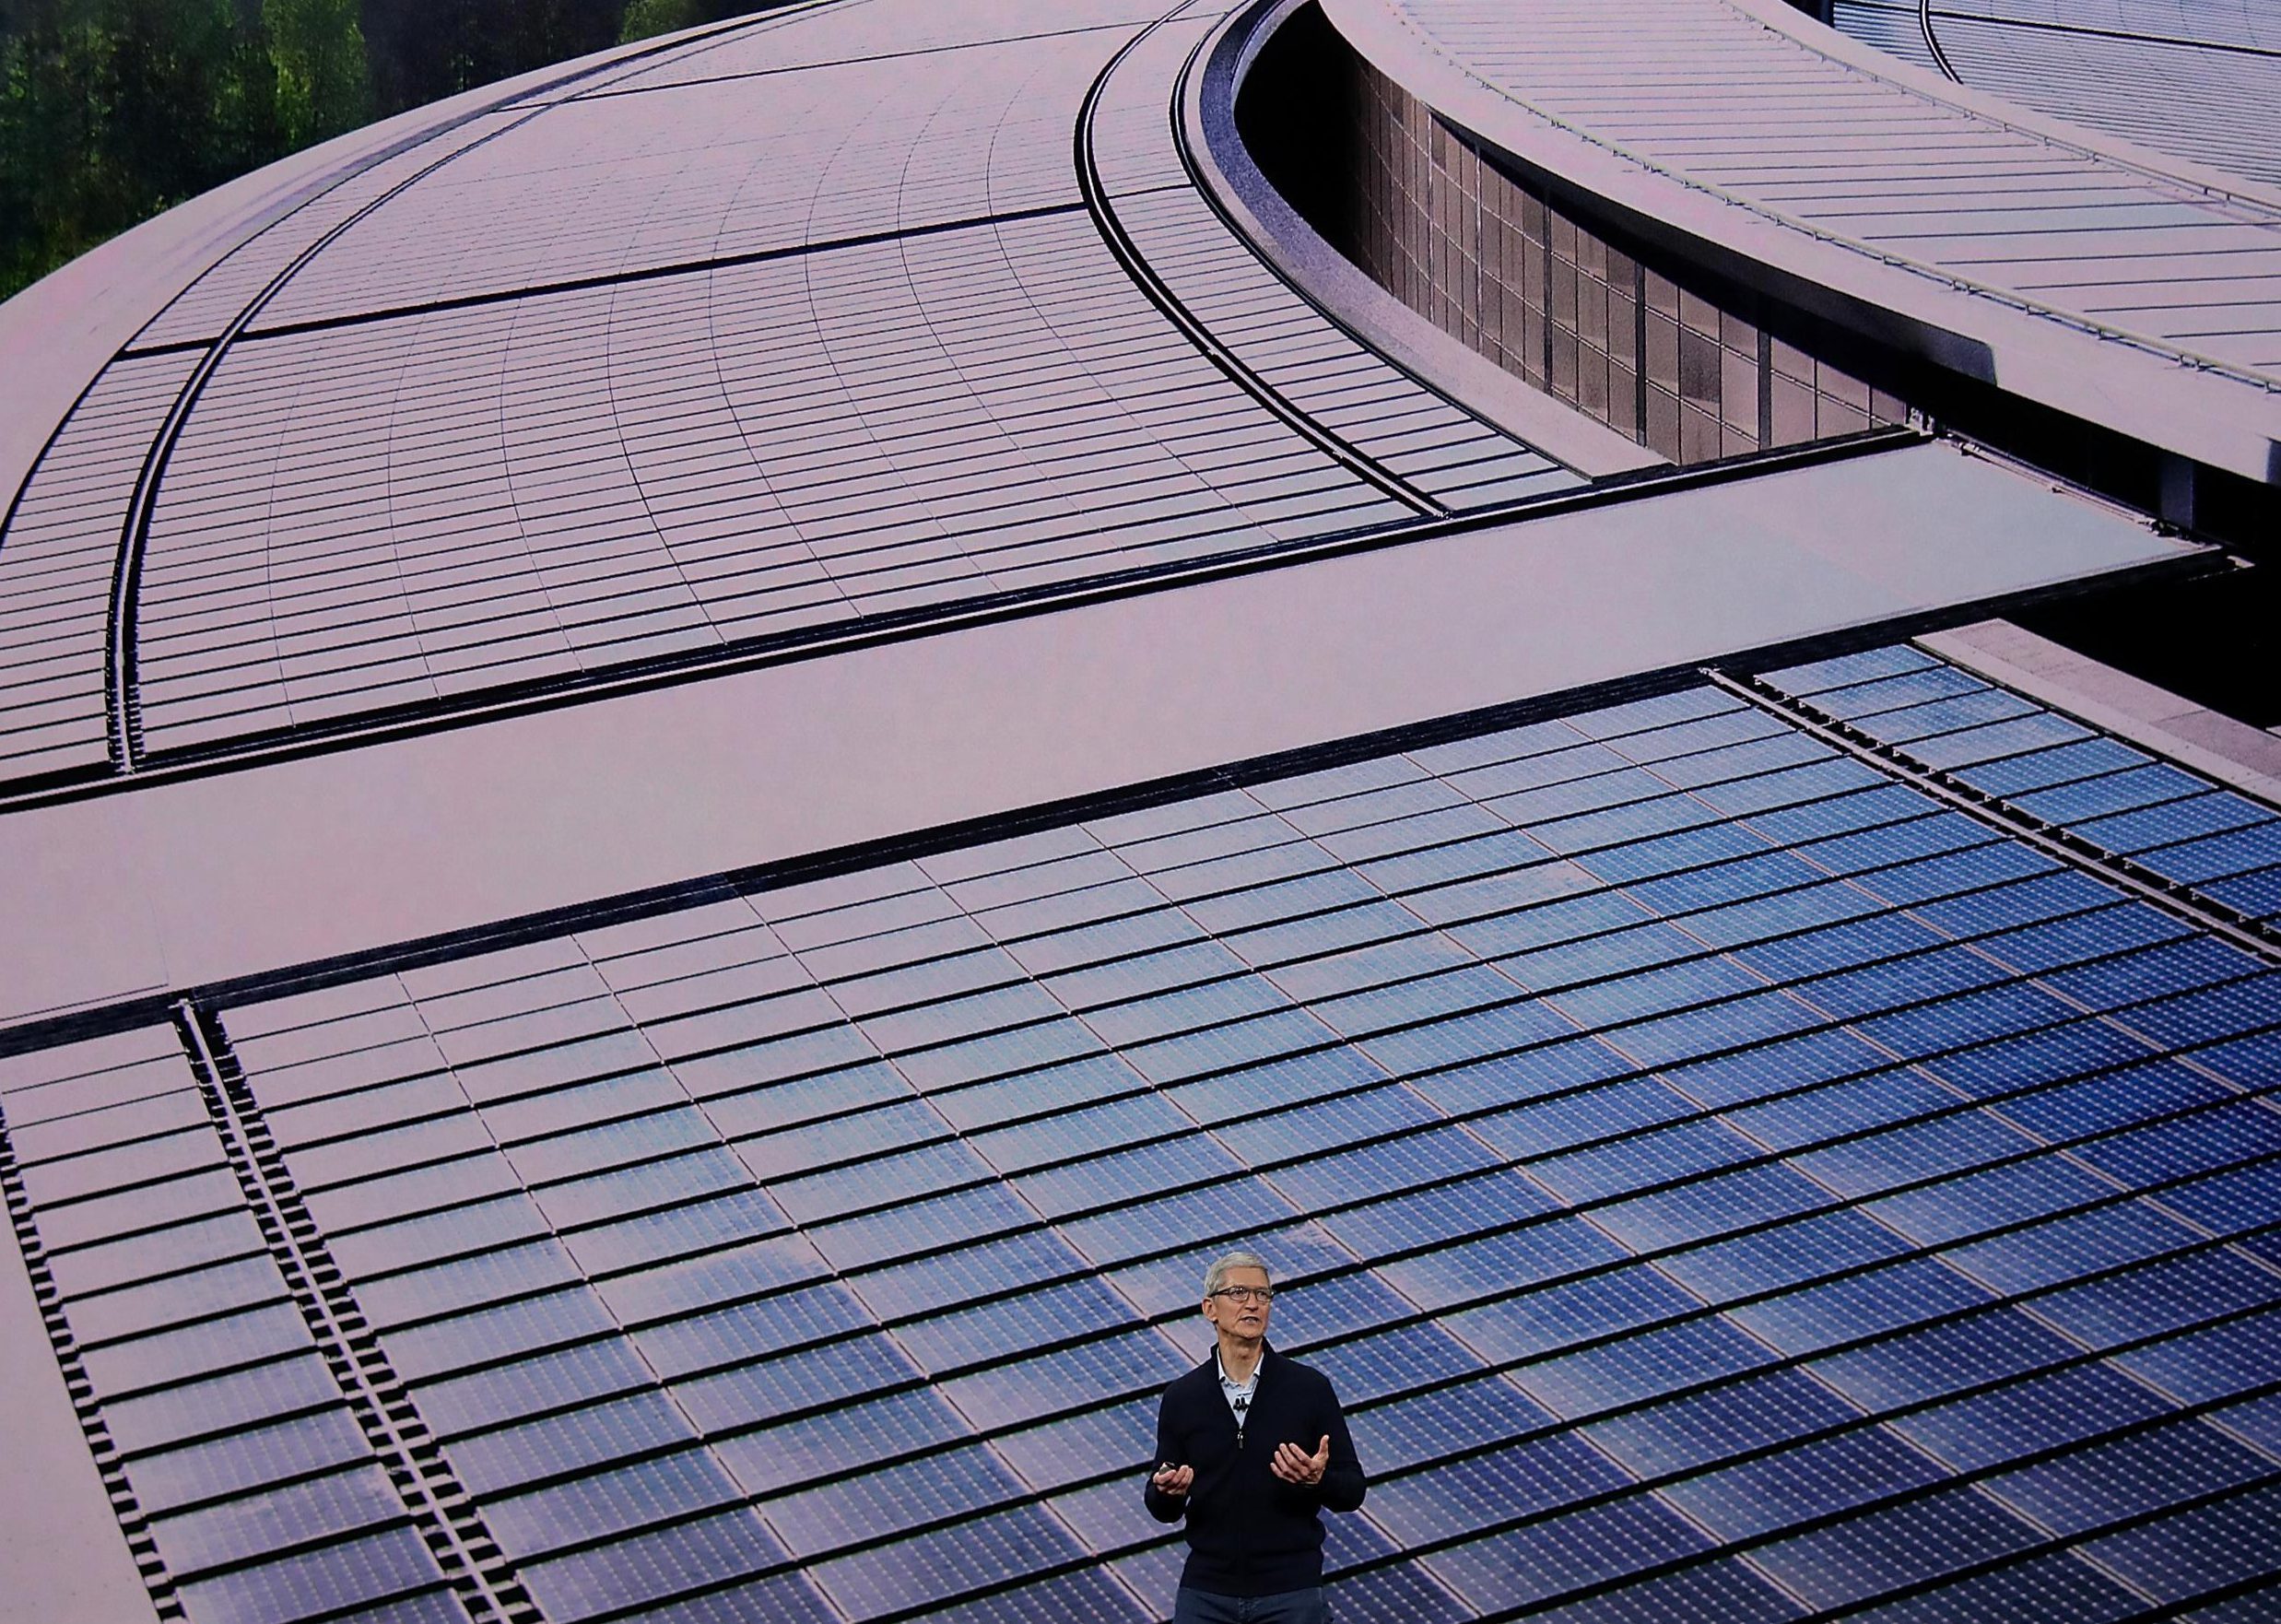  Apple CEO Tim Cook menjelaskan bagaimana situs ini ditenagai oleh energi terbarukan 100%, termasuk 17 megawatt tenaga surya atap